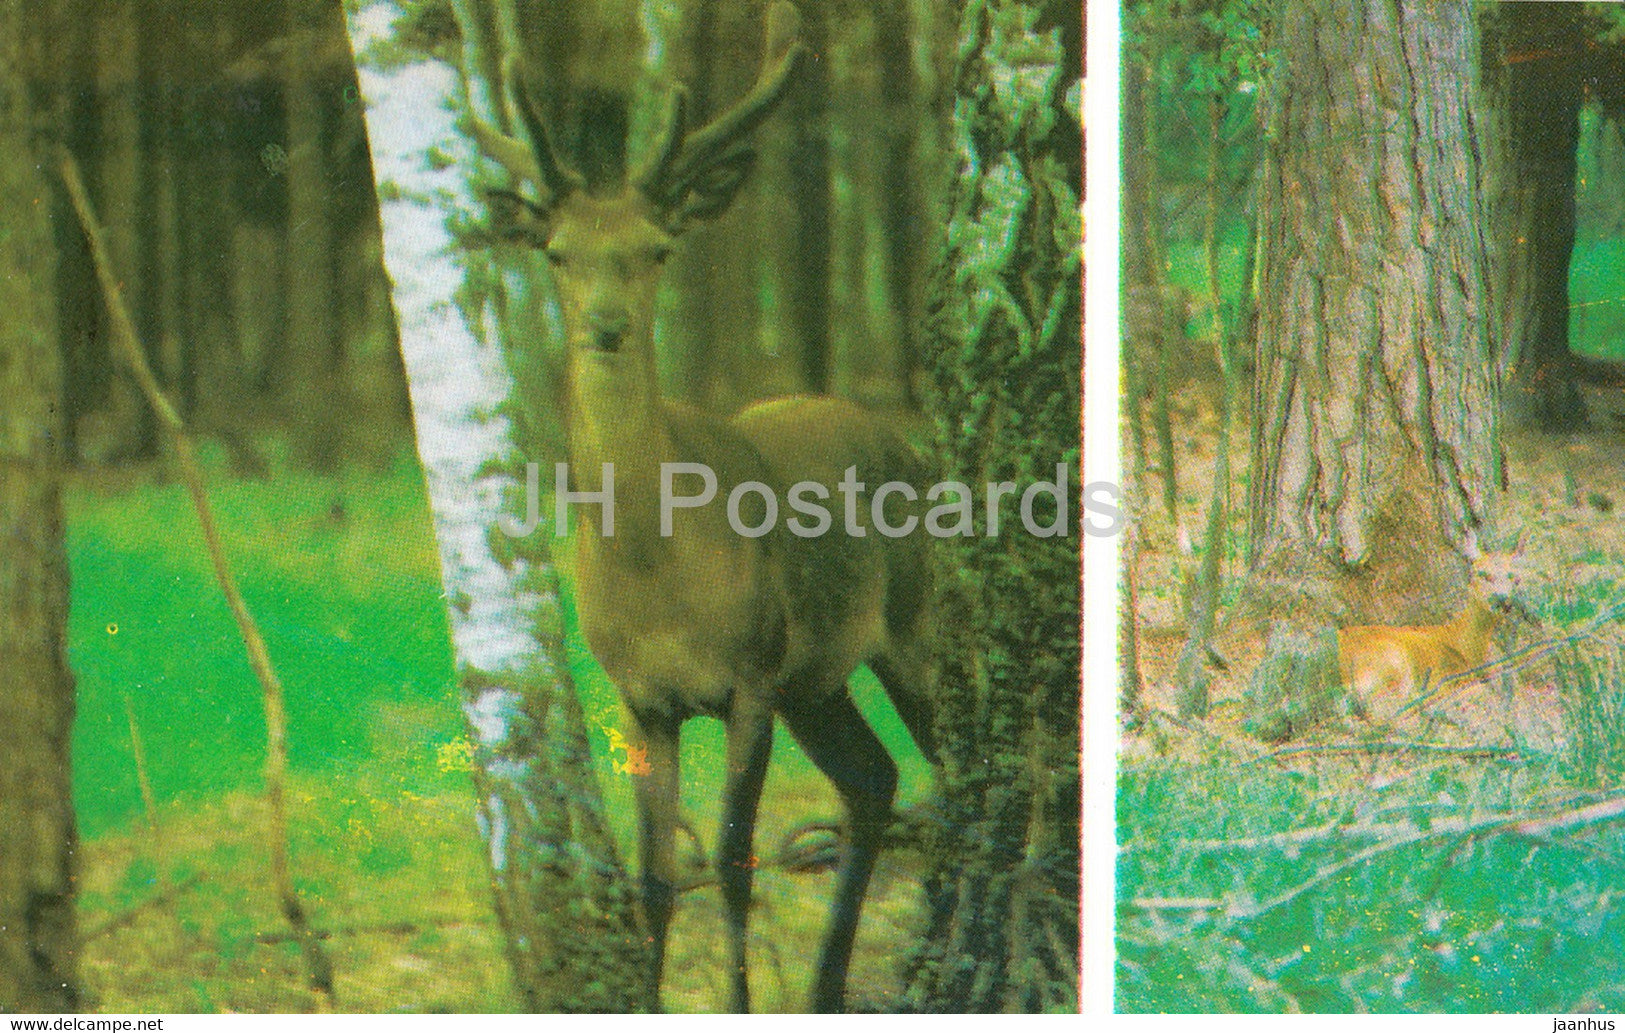 Belovezhskaya Pushcha National Park - The Roe - The deer is a typical Puscha dweller - 1981 - Berarus USSR - unused - JH Postcards